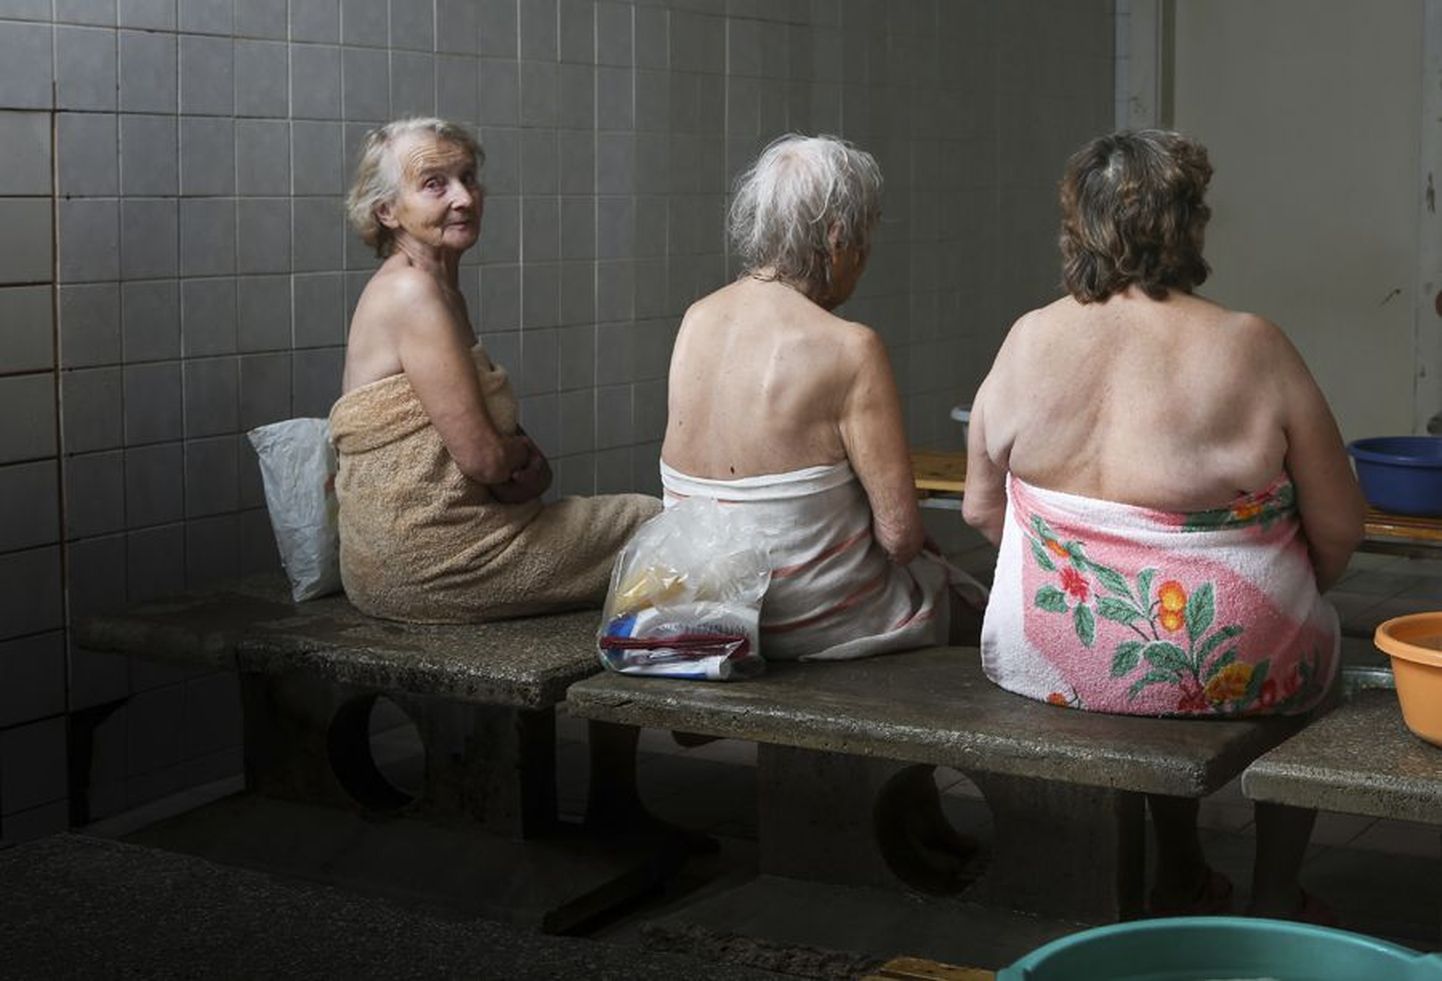 Kuigi saunast käis neljapäeval esimese tunni jooksul läbi 19 naist, pages enamik neist pilditegemise ajaks leiliruumi. Alles hiljem hakati arutama, et kui ainult kolm julget fotole läksid, siis äkki arvataksegi, et naisi linnasaunas nii vähe käib.